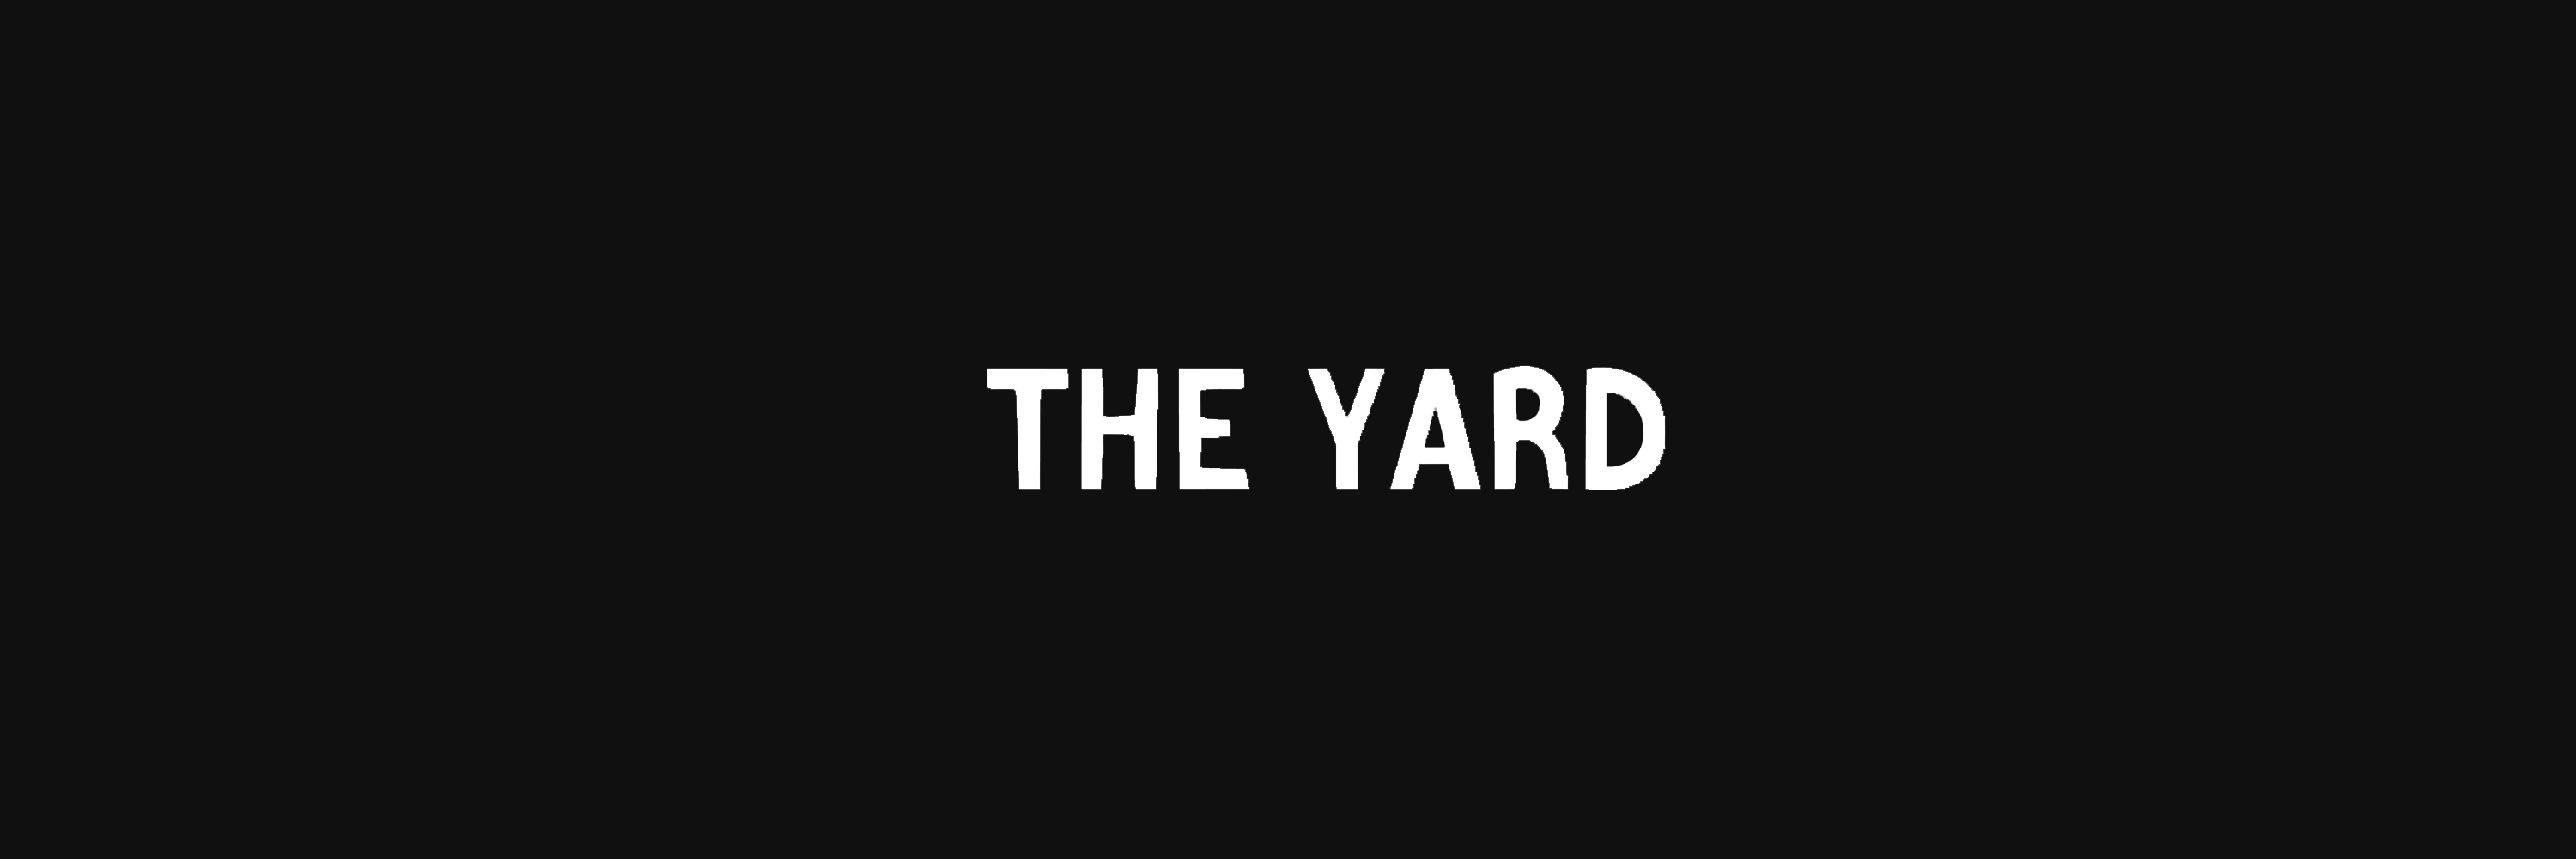 The Yard.